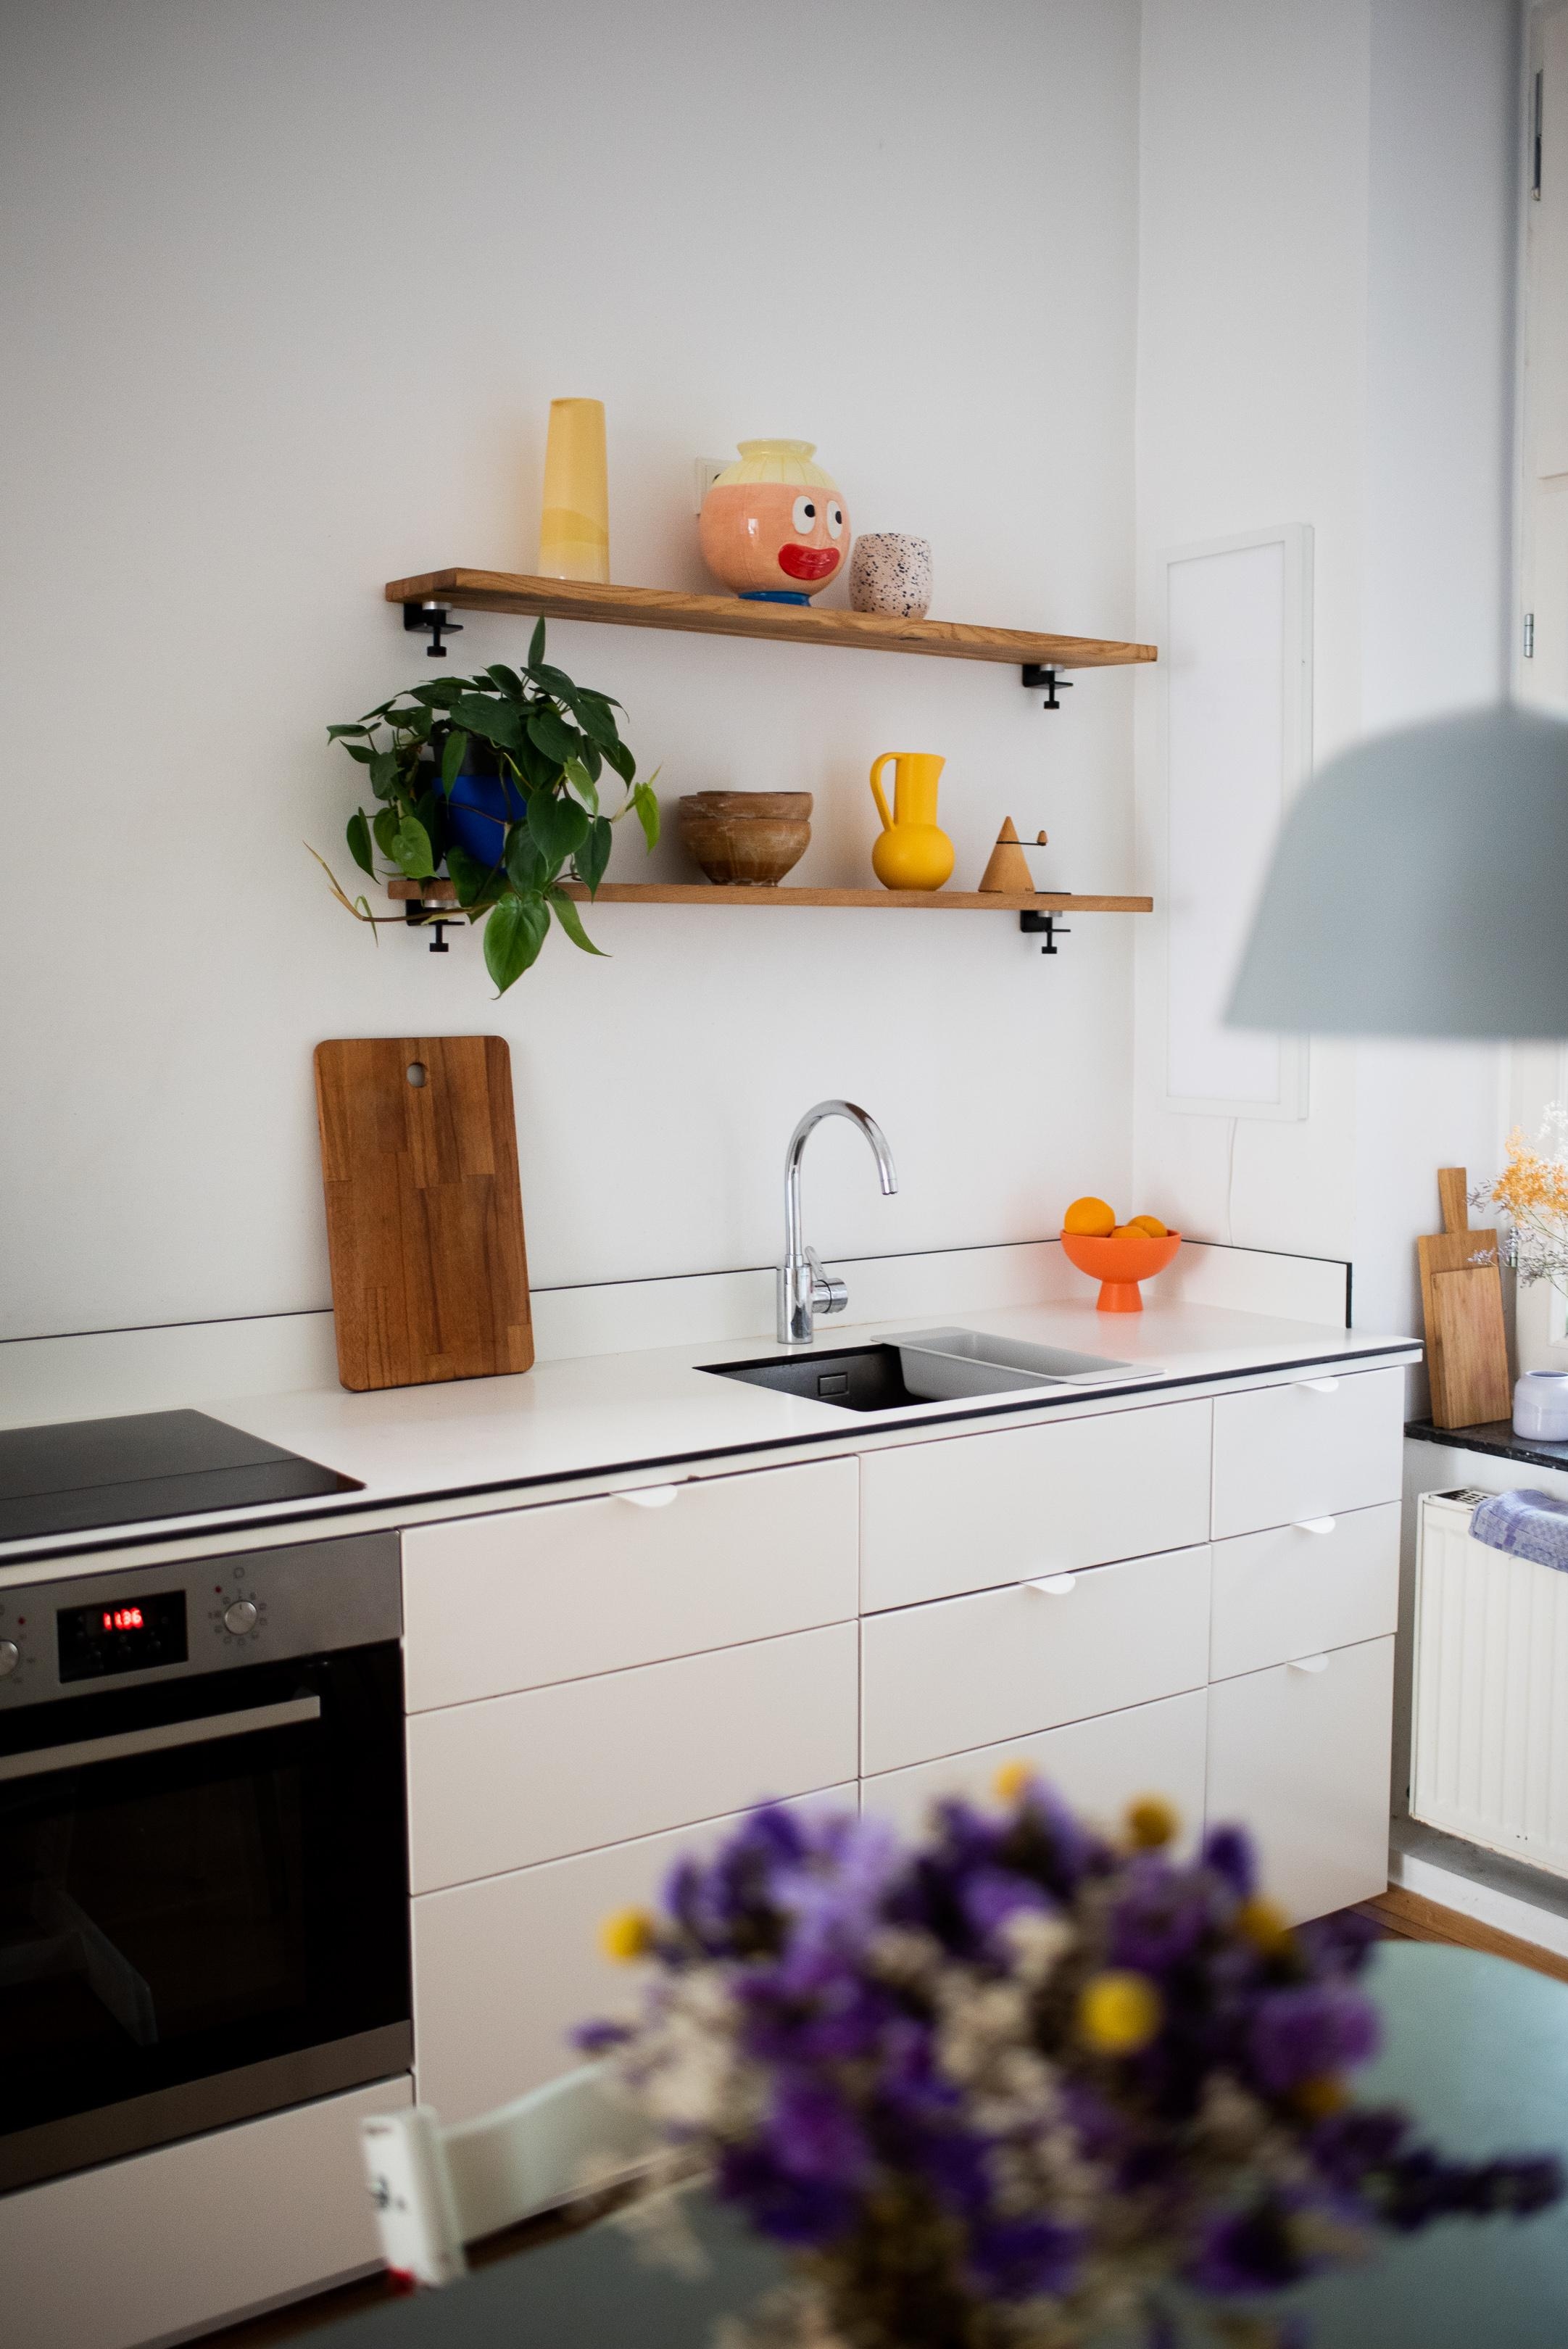 neues Regal ist eingezogen #kitchenstyle #küche #wohnküche #regal #kitcheninspiration #interior